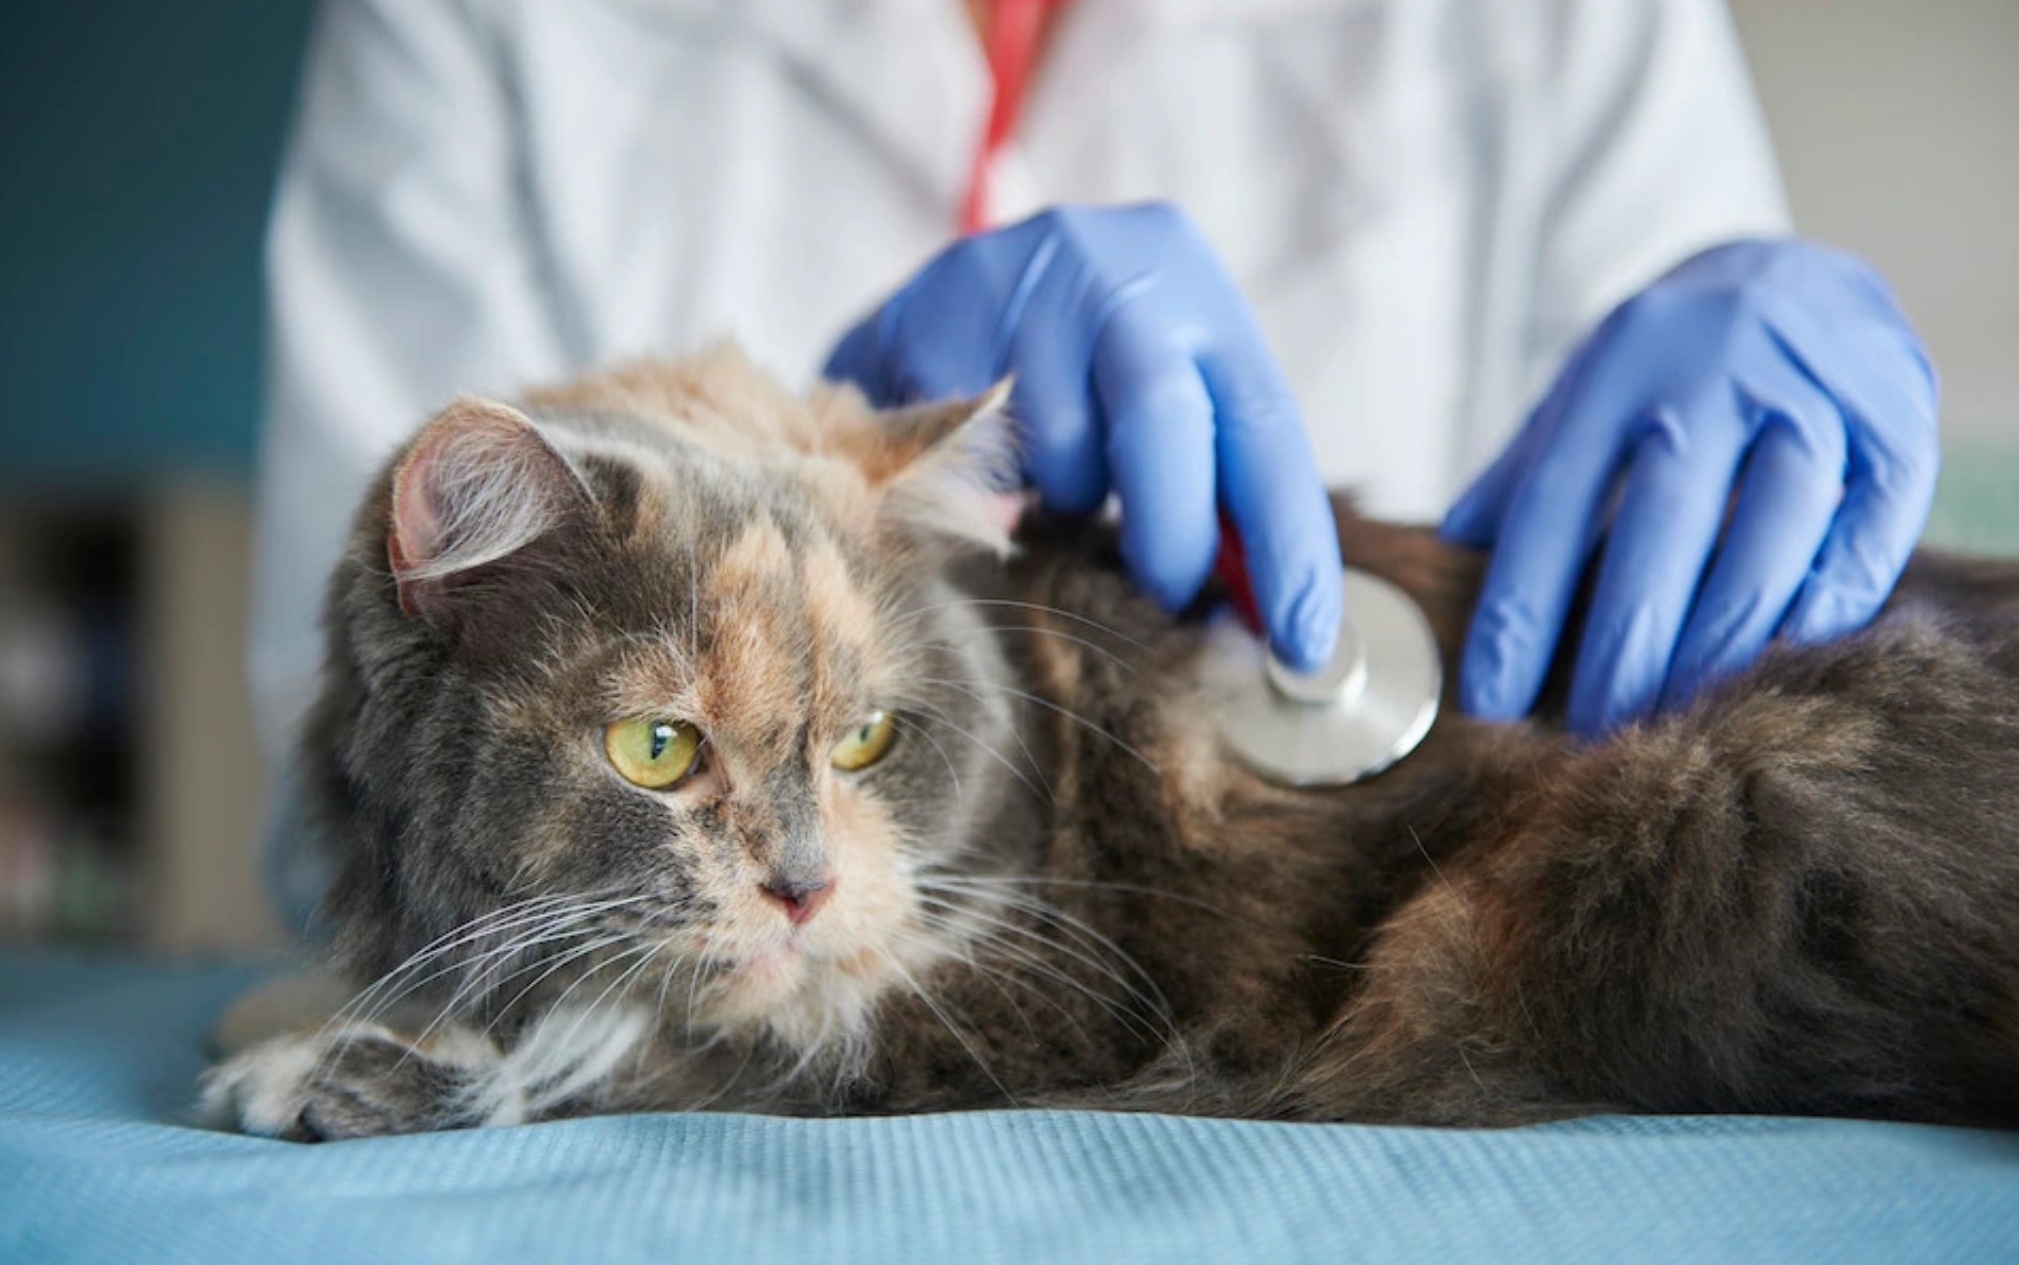 Ngeri! Ini 3 Jenis Penyakit Zoonosis yang Bisa Ditularkan oleh Kucing kepada Manusia, Waspadalah